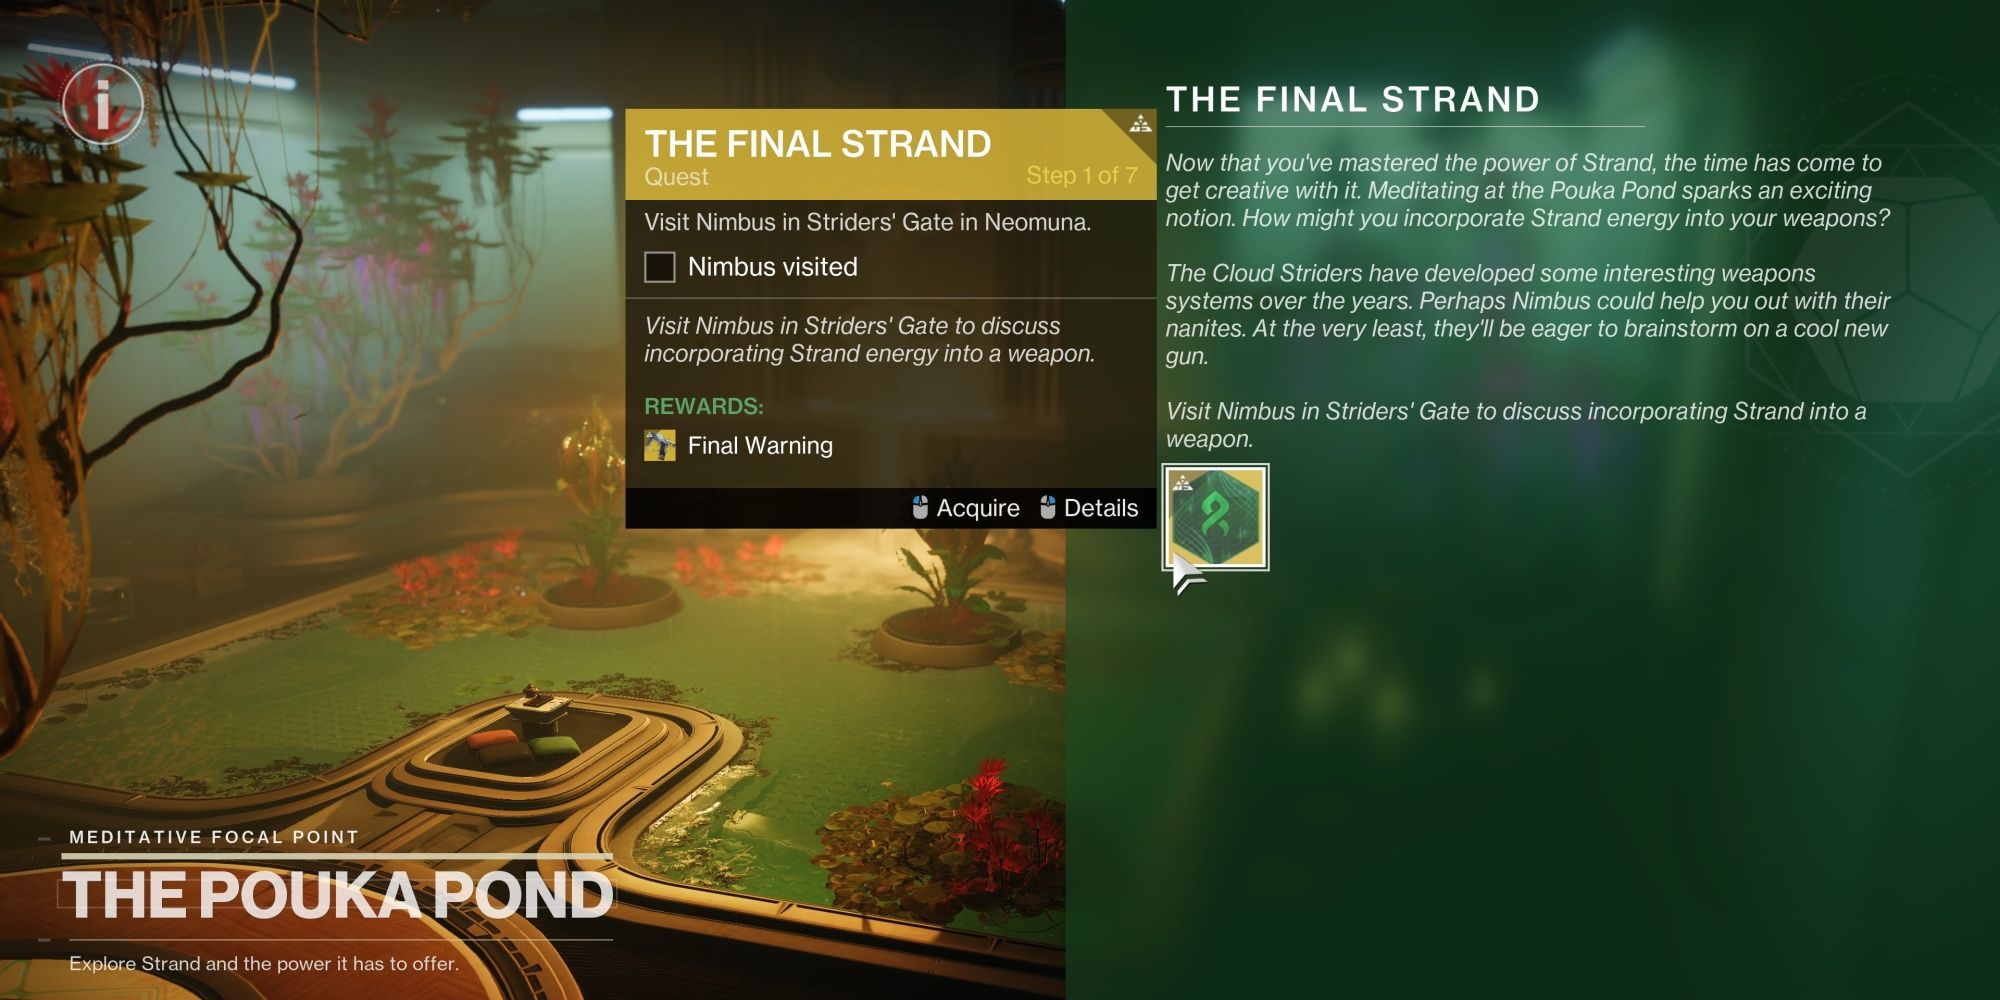 Destiny 2 Final Strand Quest Start